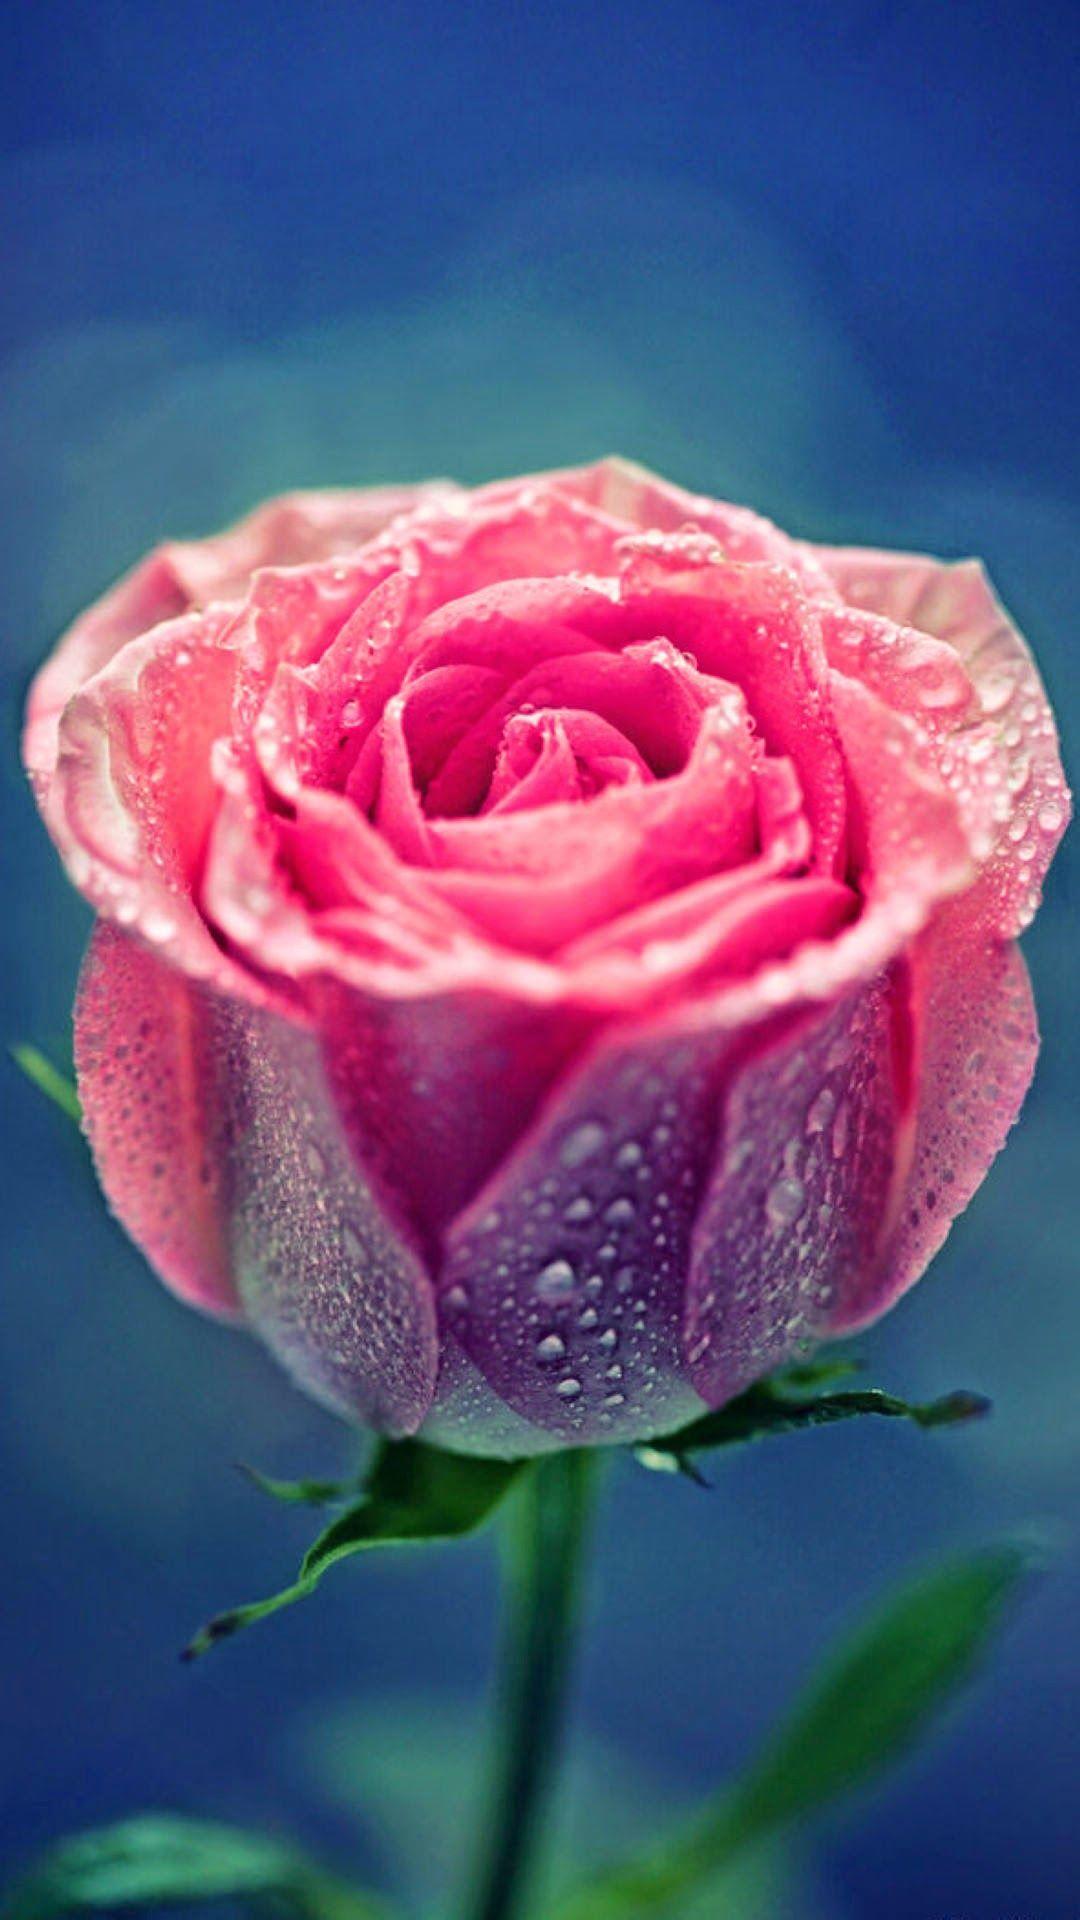 1080x1920 iWallpaper - Hình nền hoa hồng đẹp như sương. hình nền iPhone 6